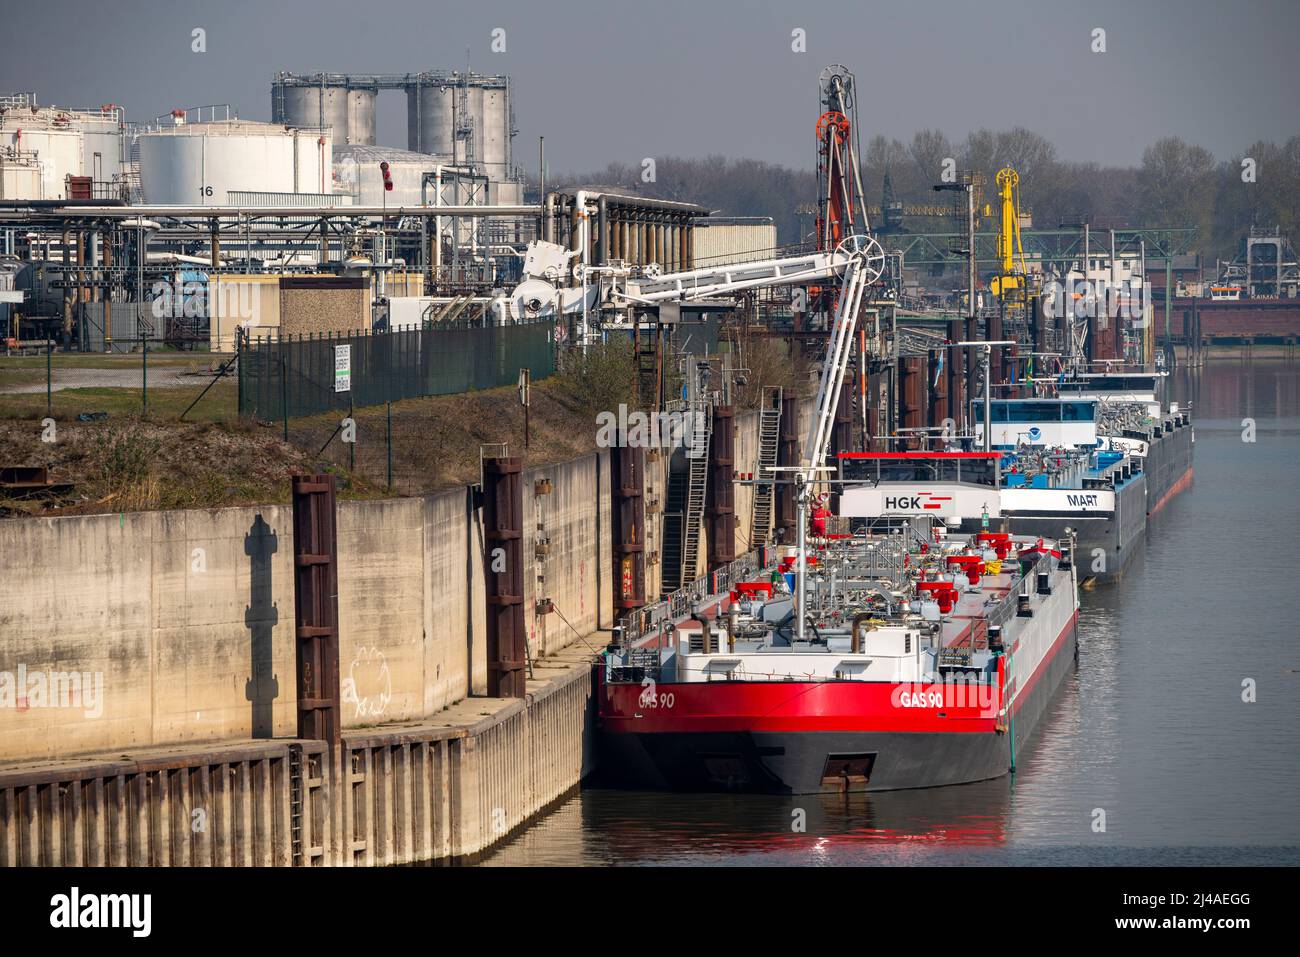 Duisport, Hafen von Ruhrort, Ölinsel, TanQuid-Tanklager, für Erdölprodukte, Chemische Produkte, petrochemische Produkte, Flüssiggas, Frachtschiff Stockfoto